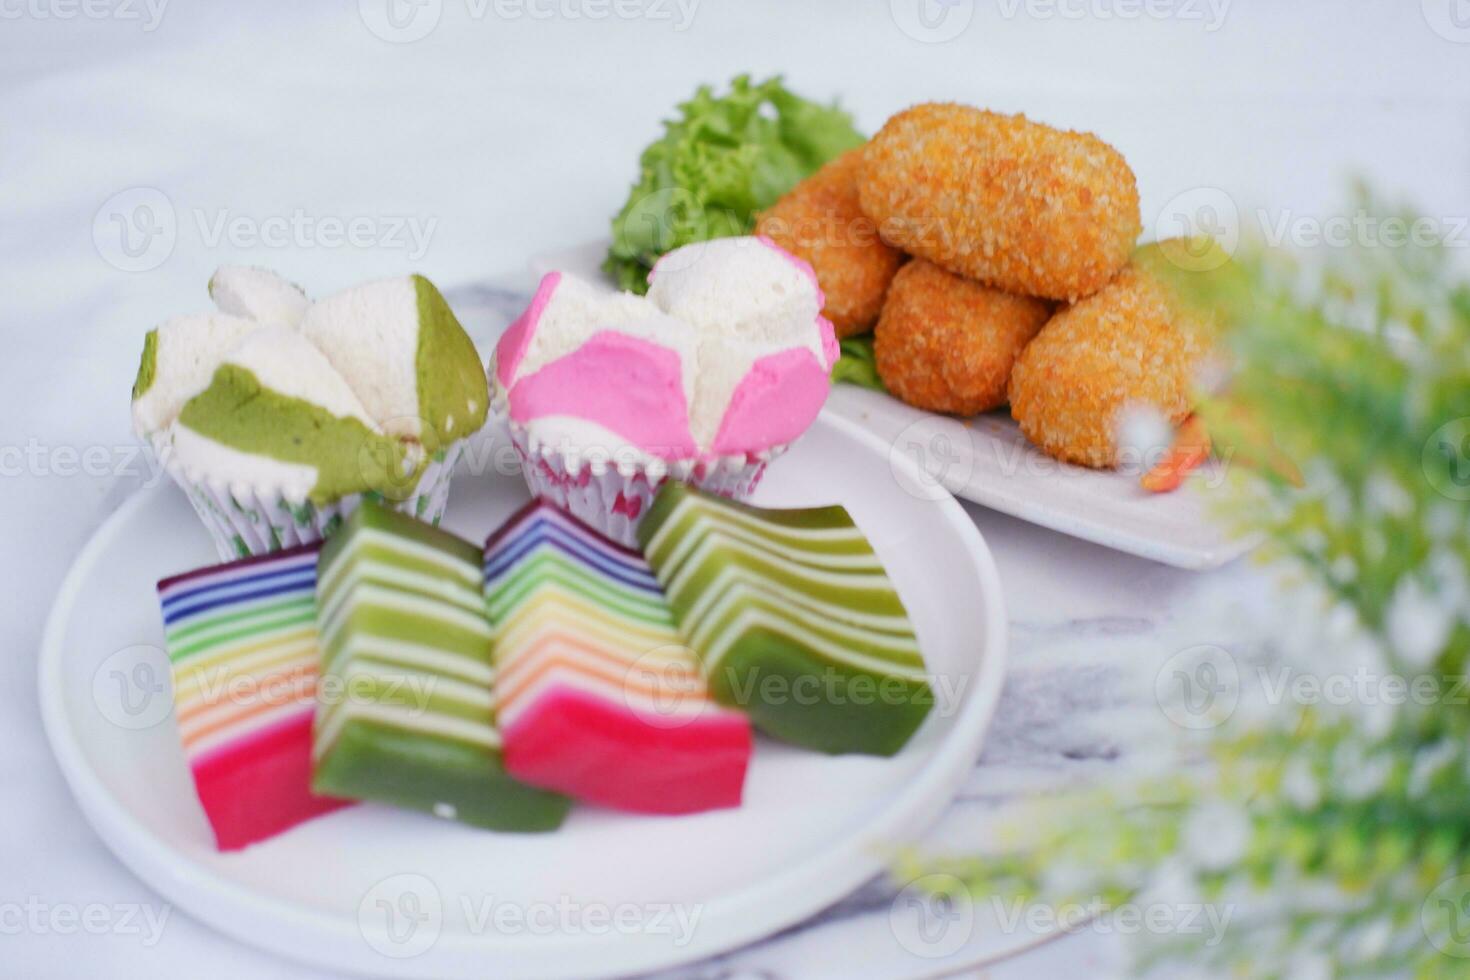 friterad kroketter, svamp muffin och regnbåge klibbig lager kaka indonesiska traditionell efterrätt foto